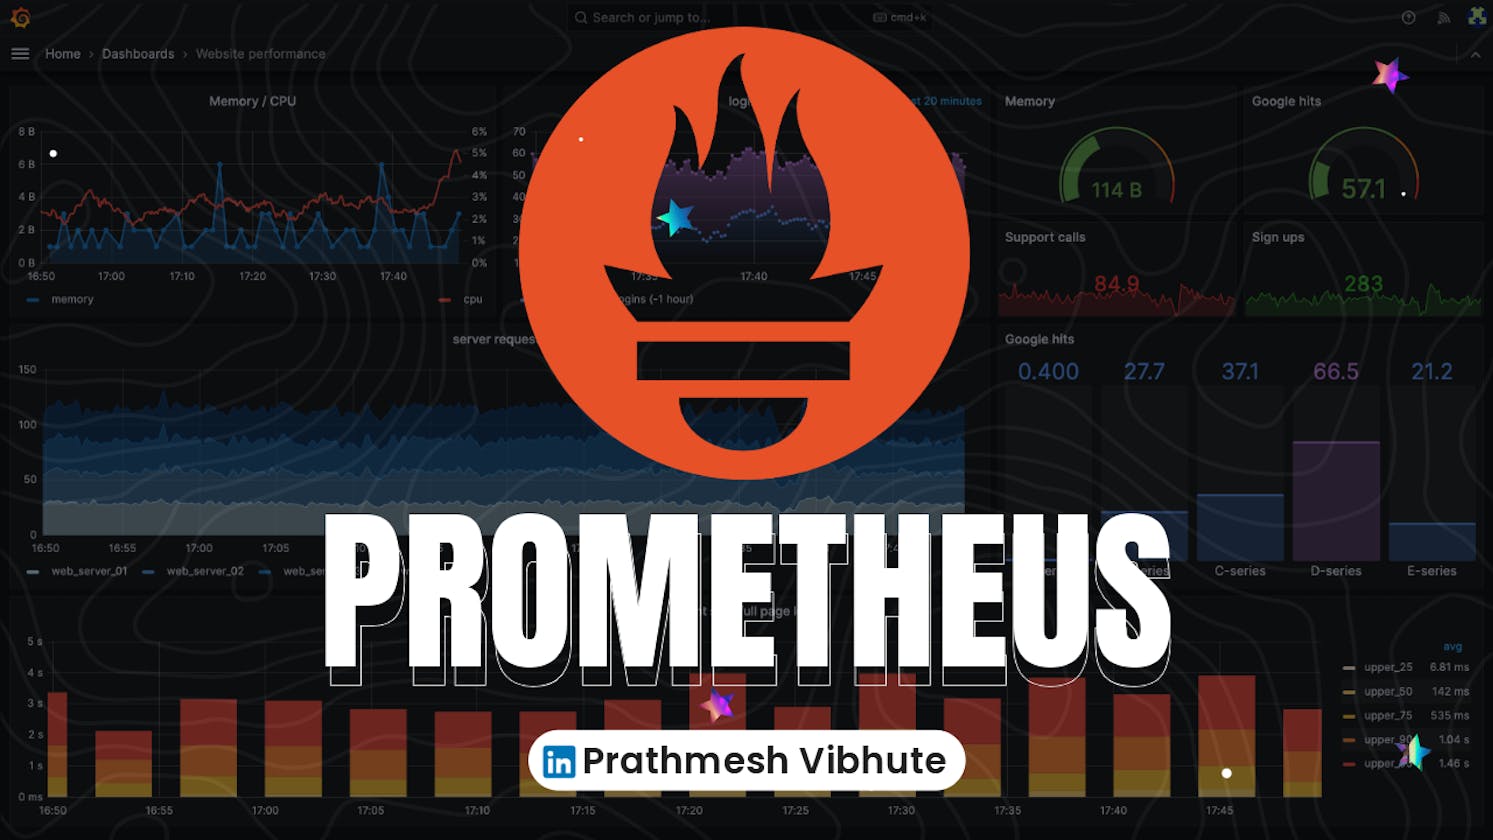 Day 79 : Prometheus